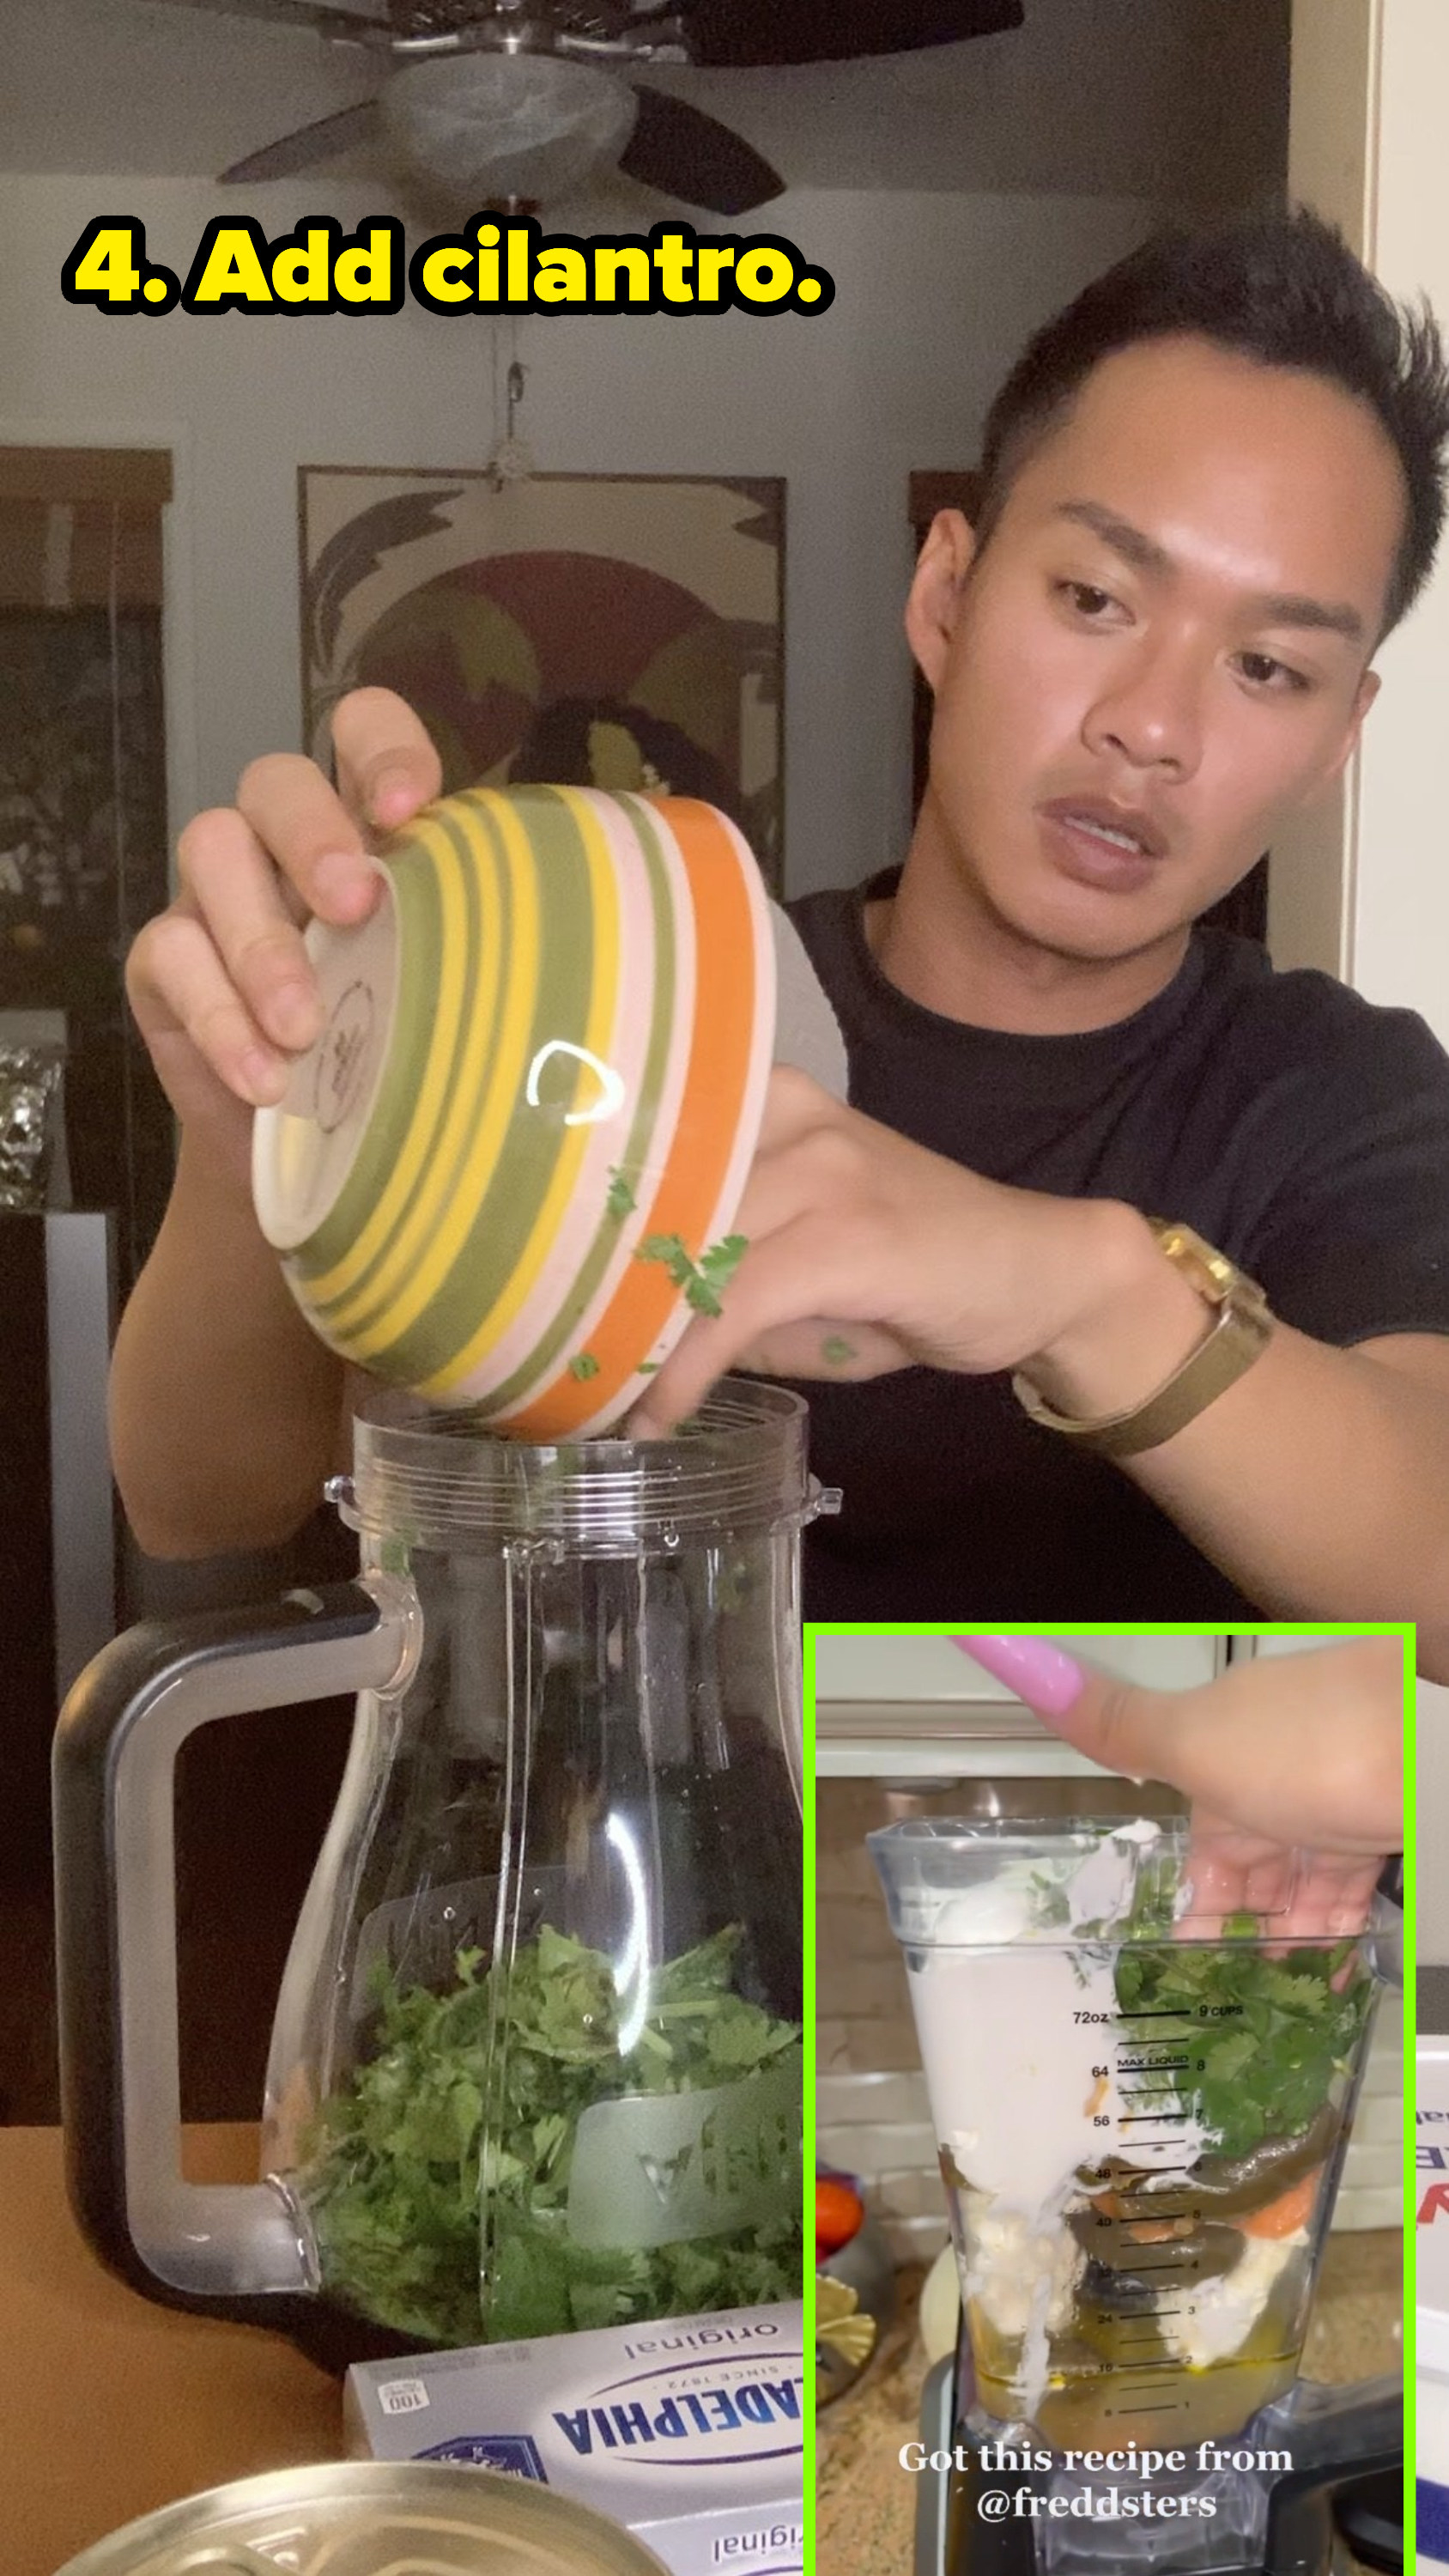 (insert) cardi b shoving in cilantro into blender (right) author scooping in cilantro into blender